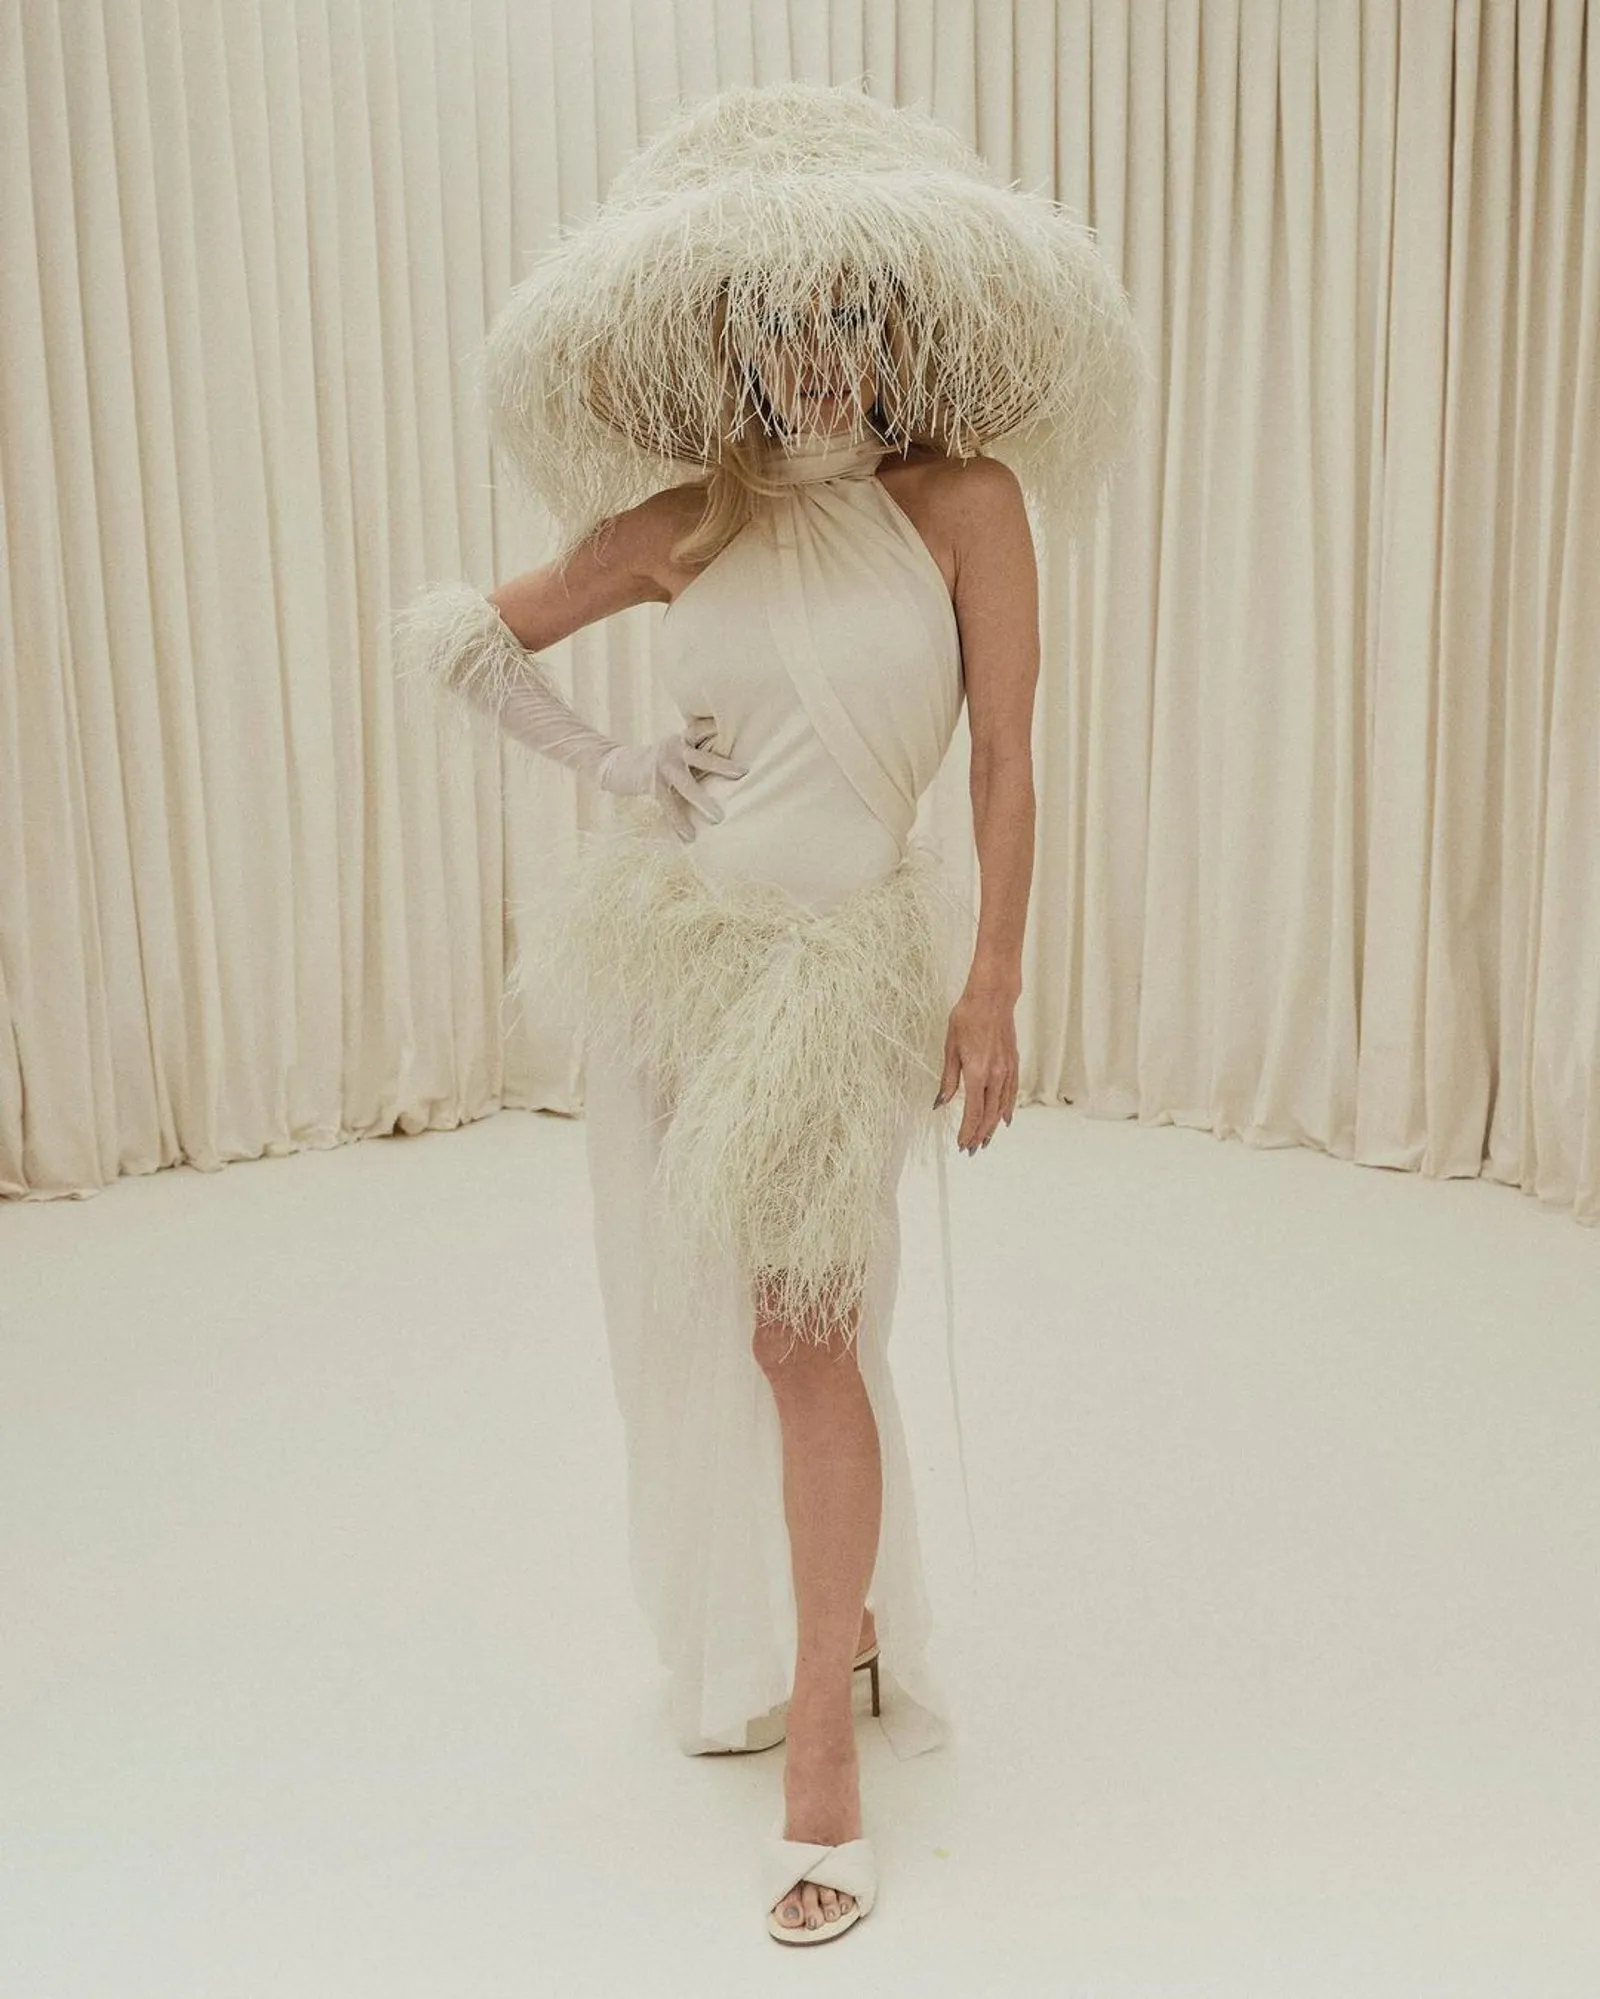 Ada 'Nyeplak' saat Pamela Anderson Pakai Dress Rafia di Acara Fashion